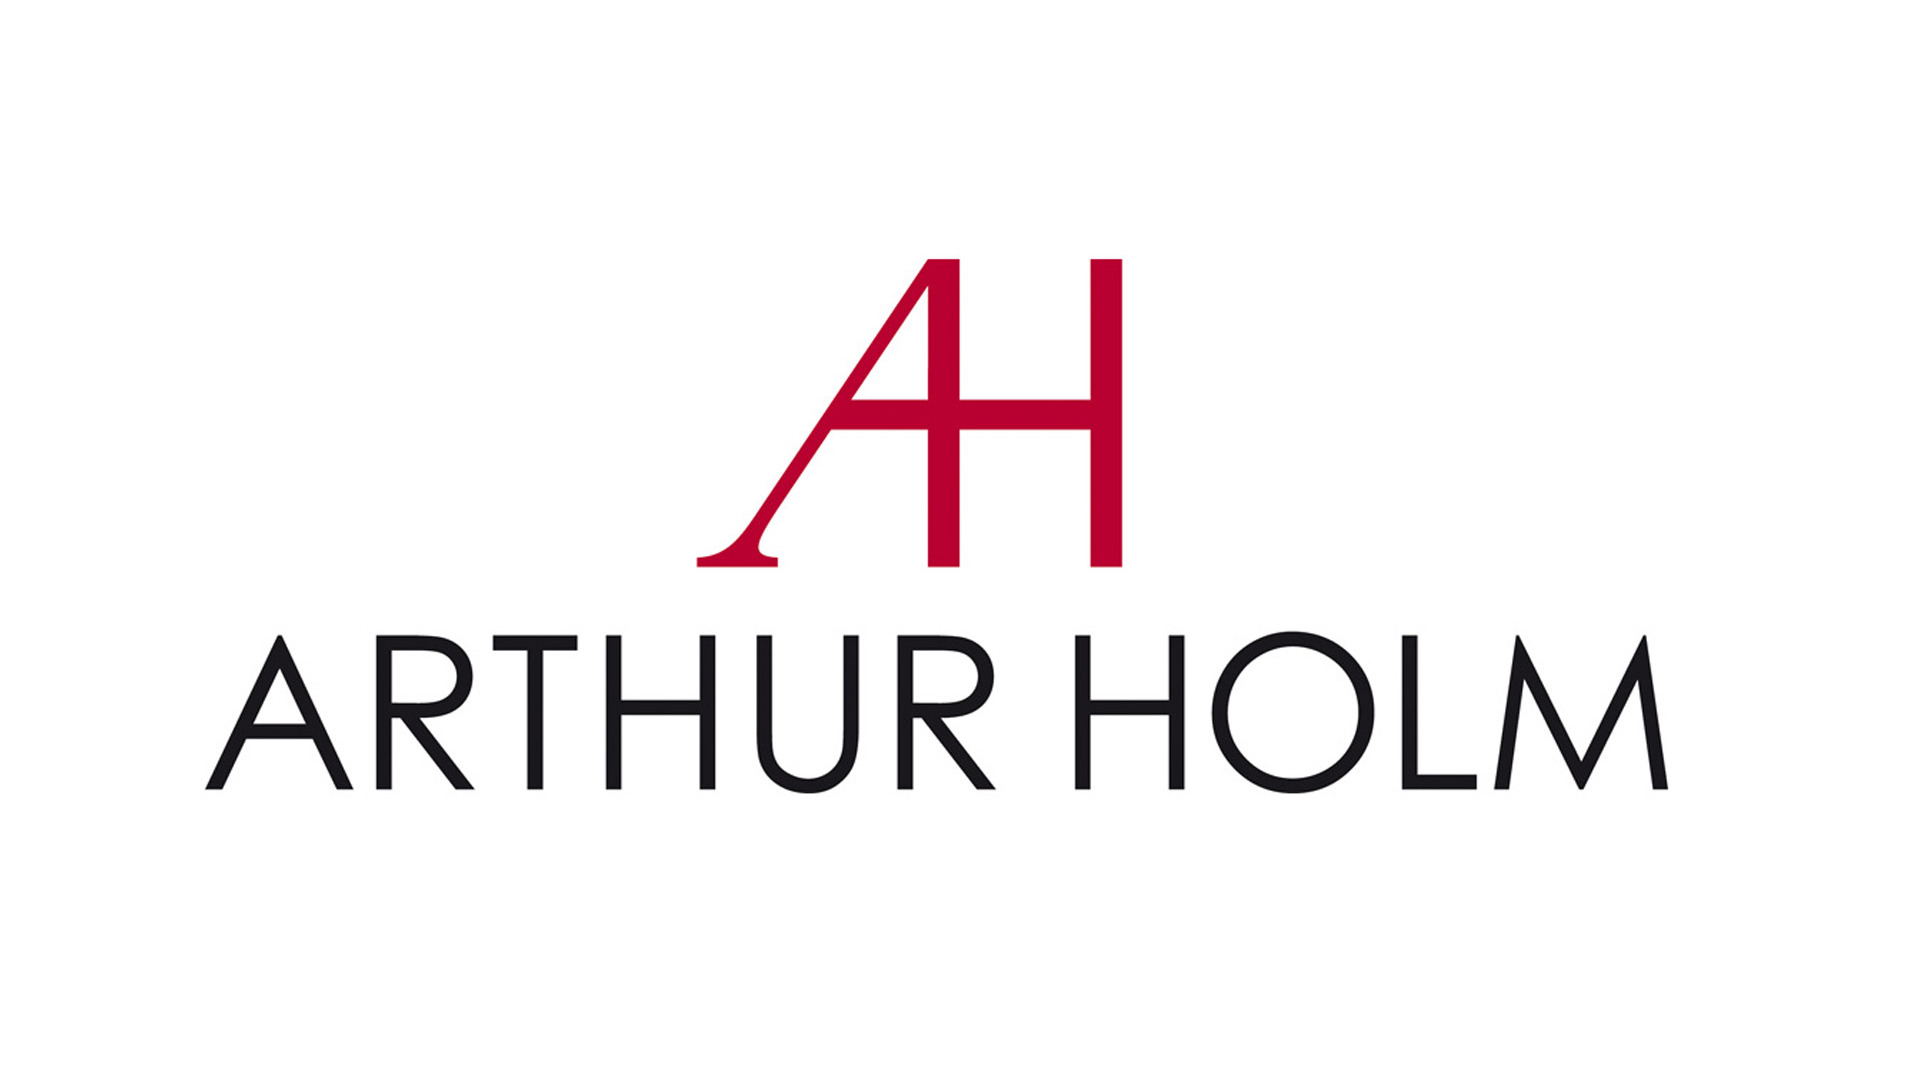 Изображения ARTHUR HOLM PC